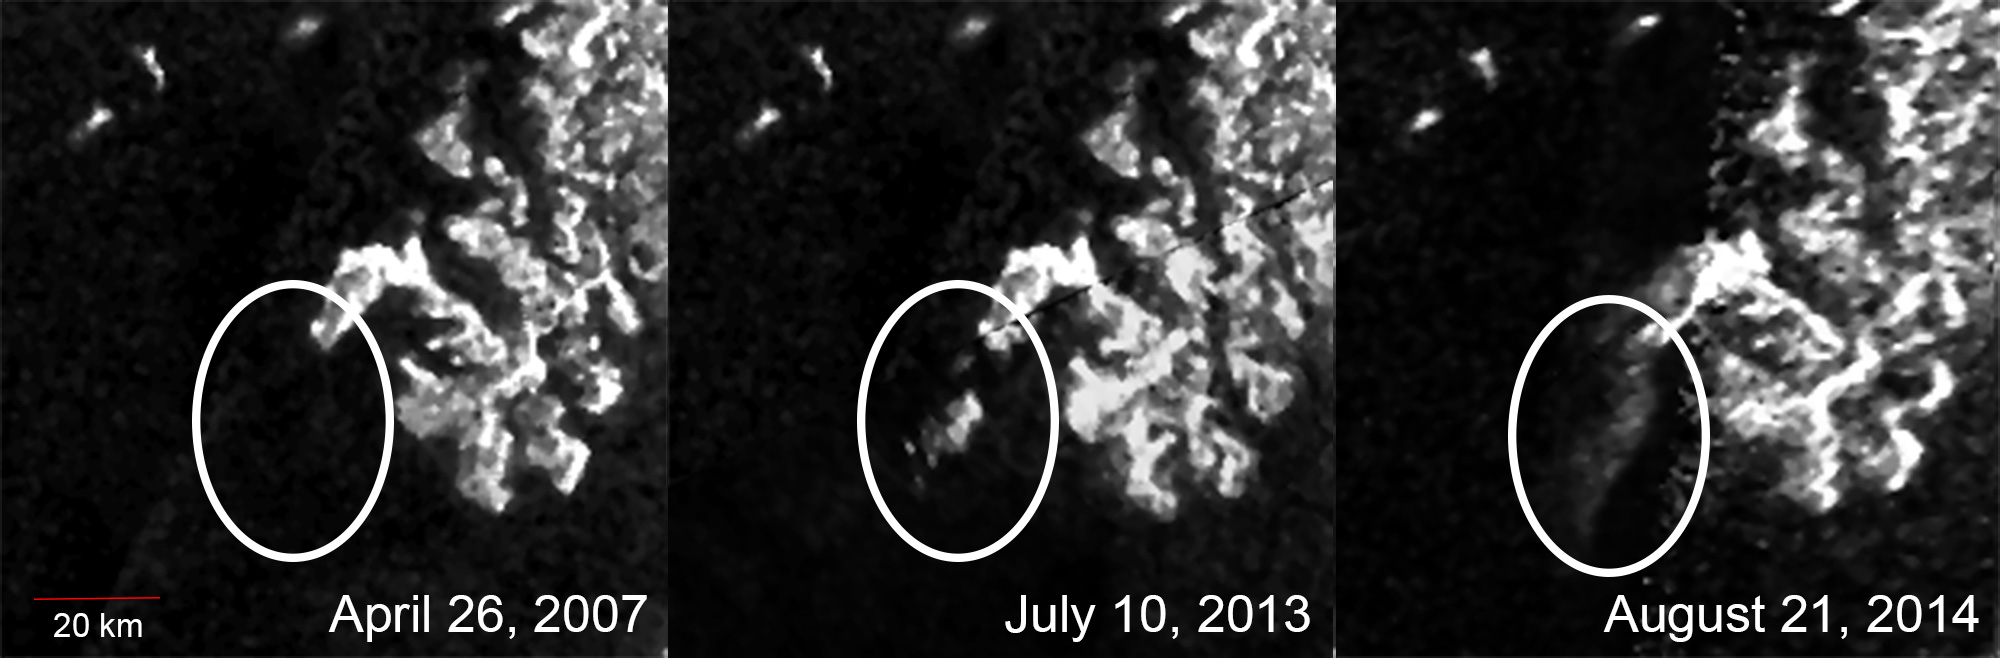 Evolución del rasgo misterioso observado en Titán. De no aparecer en primavera de 2007, a hacerlo en verano de 2013 y 2014. Fuente: NASA/JPL-Caltech/ASI/Cornell.